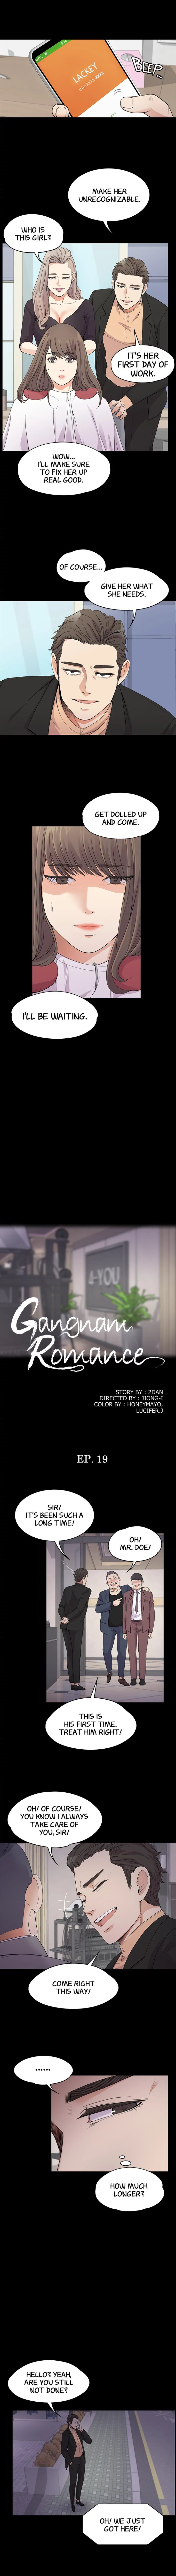 Gangnam Romance image